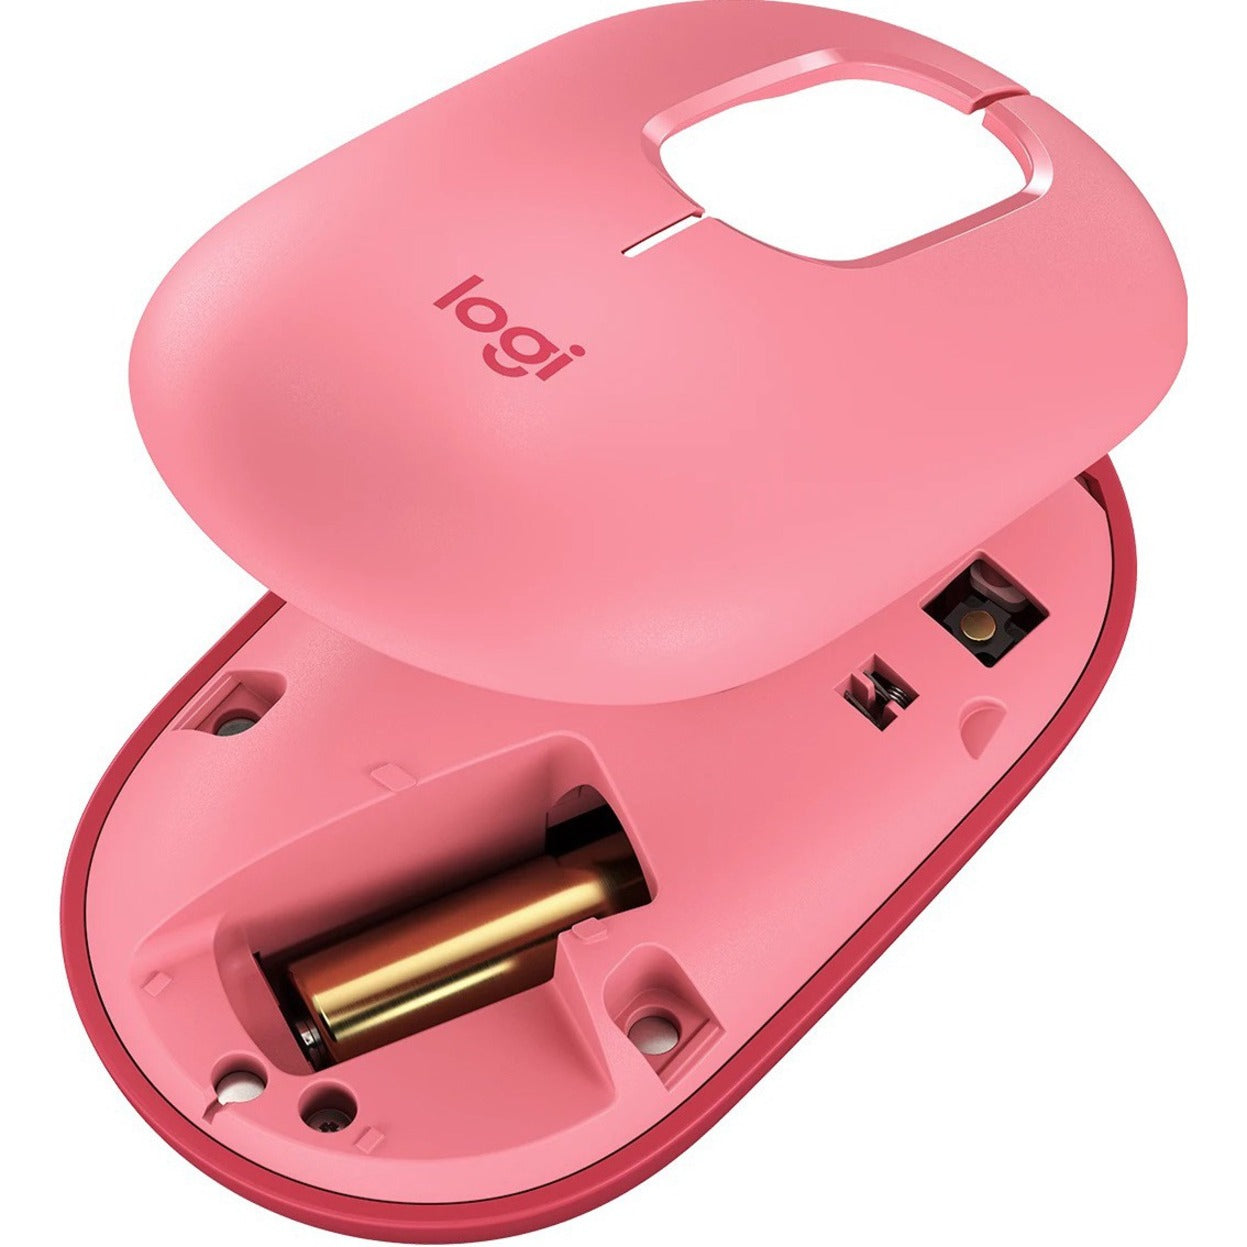 Logitech 910-006545 POP Maus mit emoji - Heartbreaker Rose Wireless Bluetooth Maus mit Scrollrad